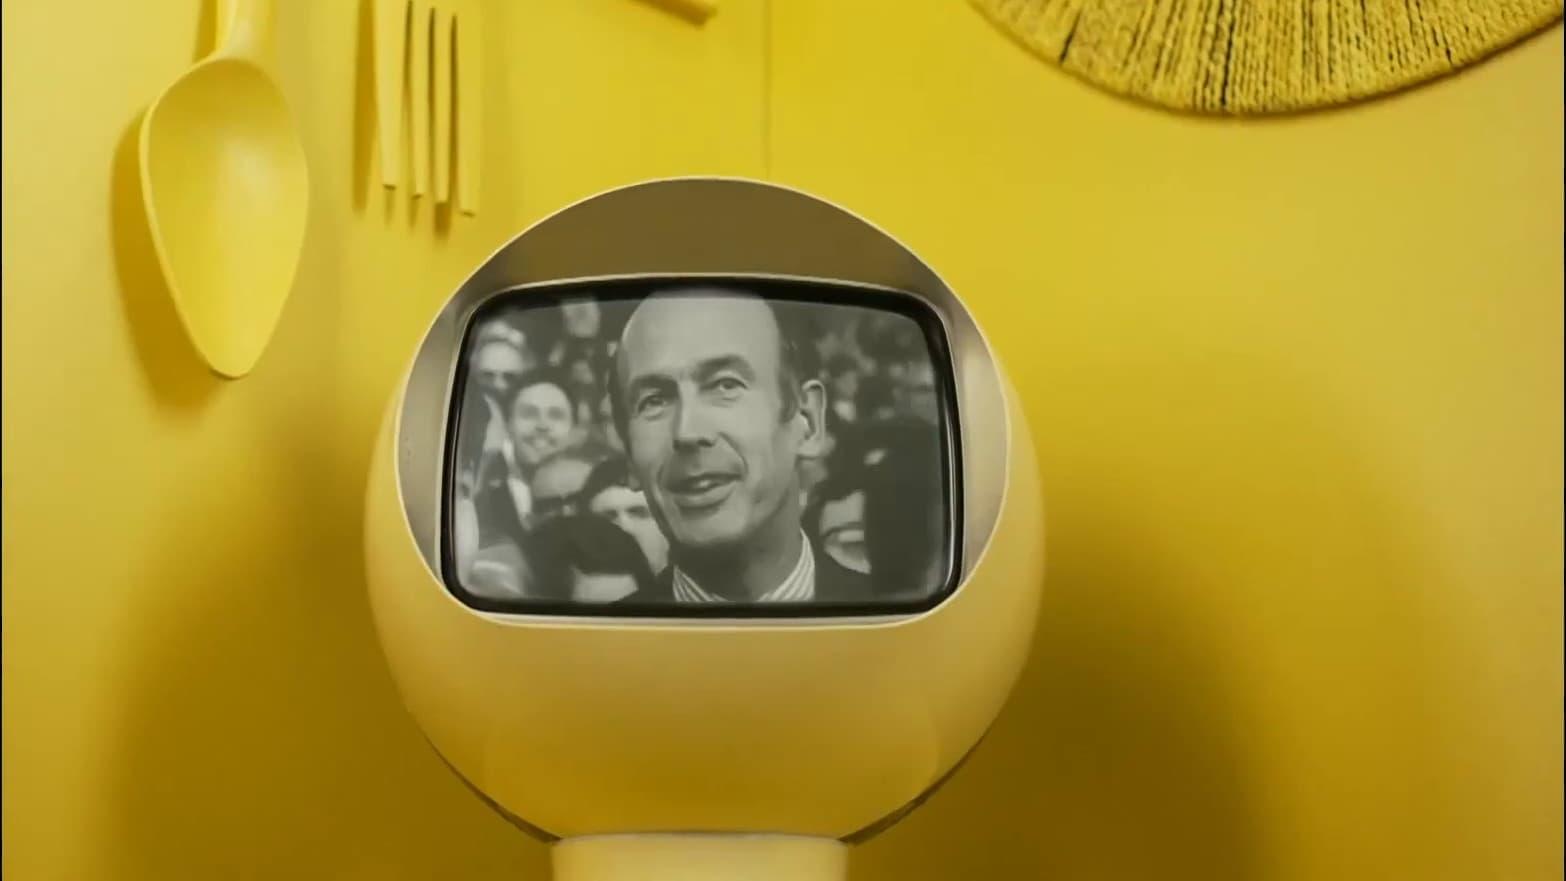 La TV des 70's : Quand Giscard était président backdrop